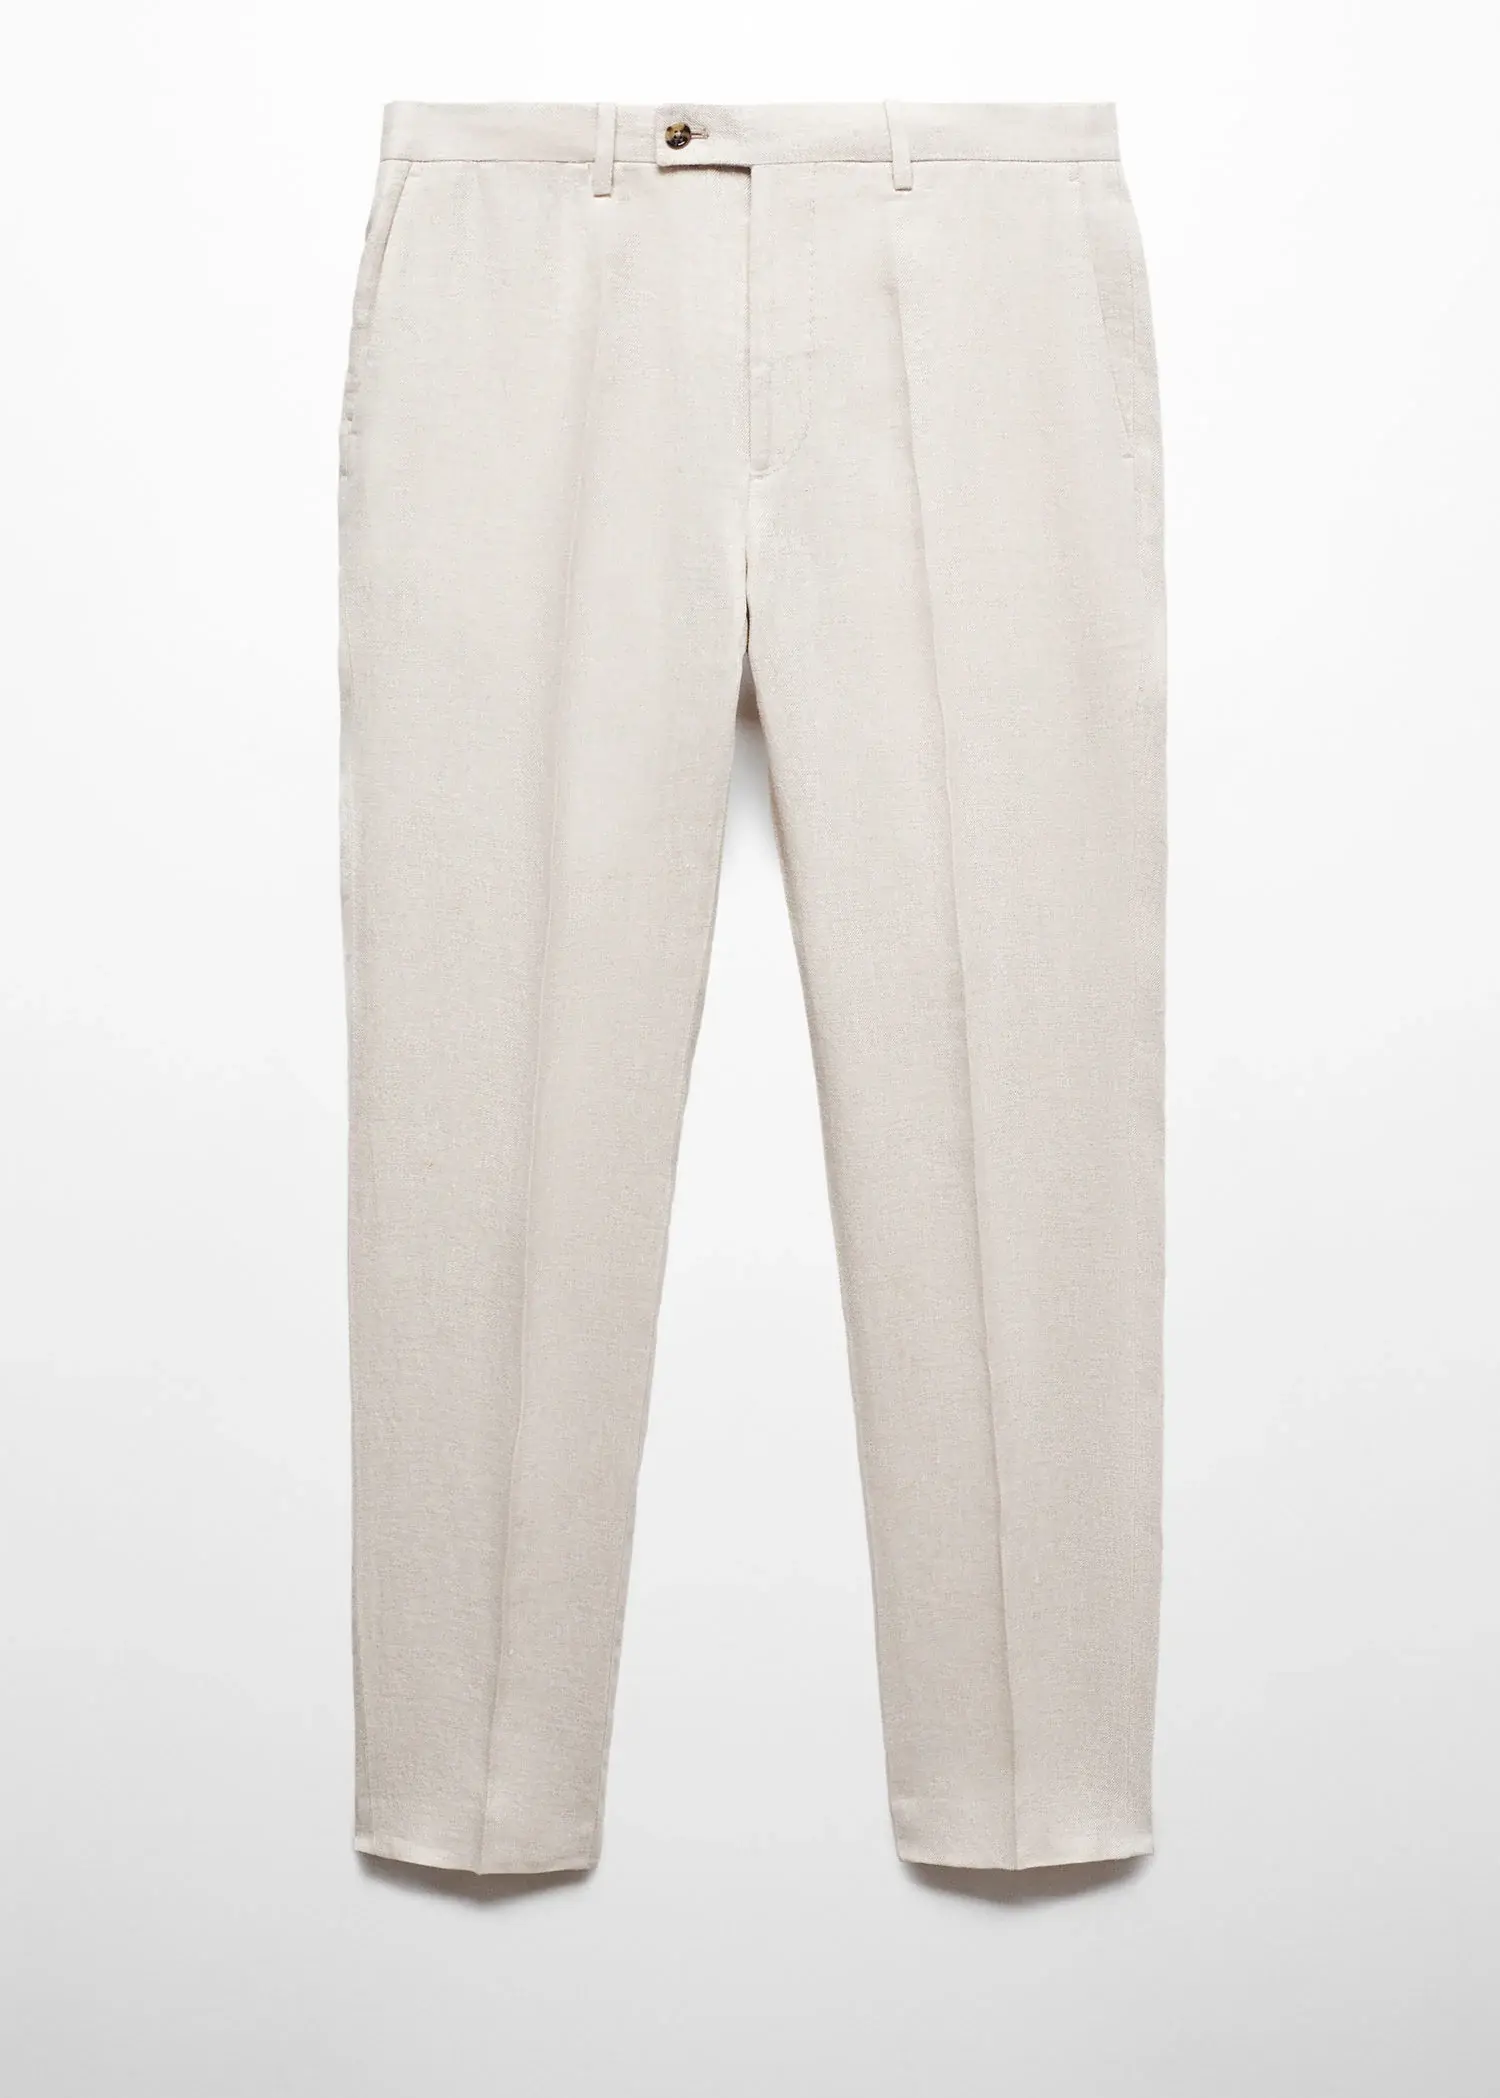 Mango Slim fit suit pants 100% linen. 1